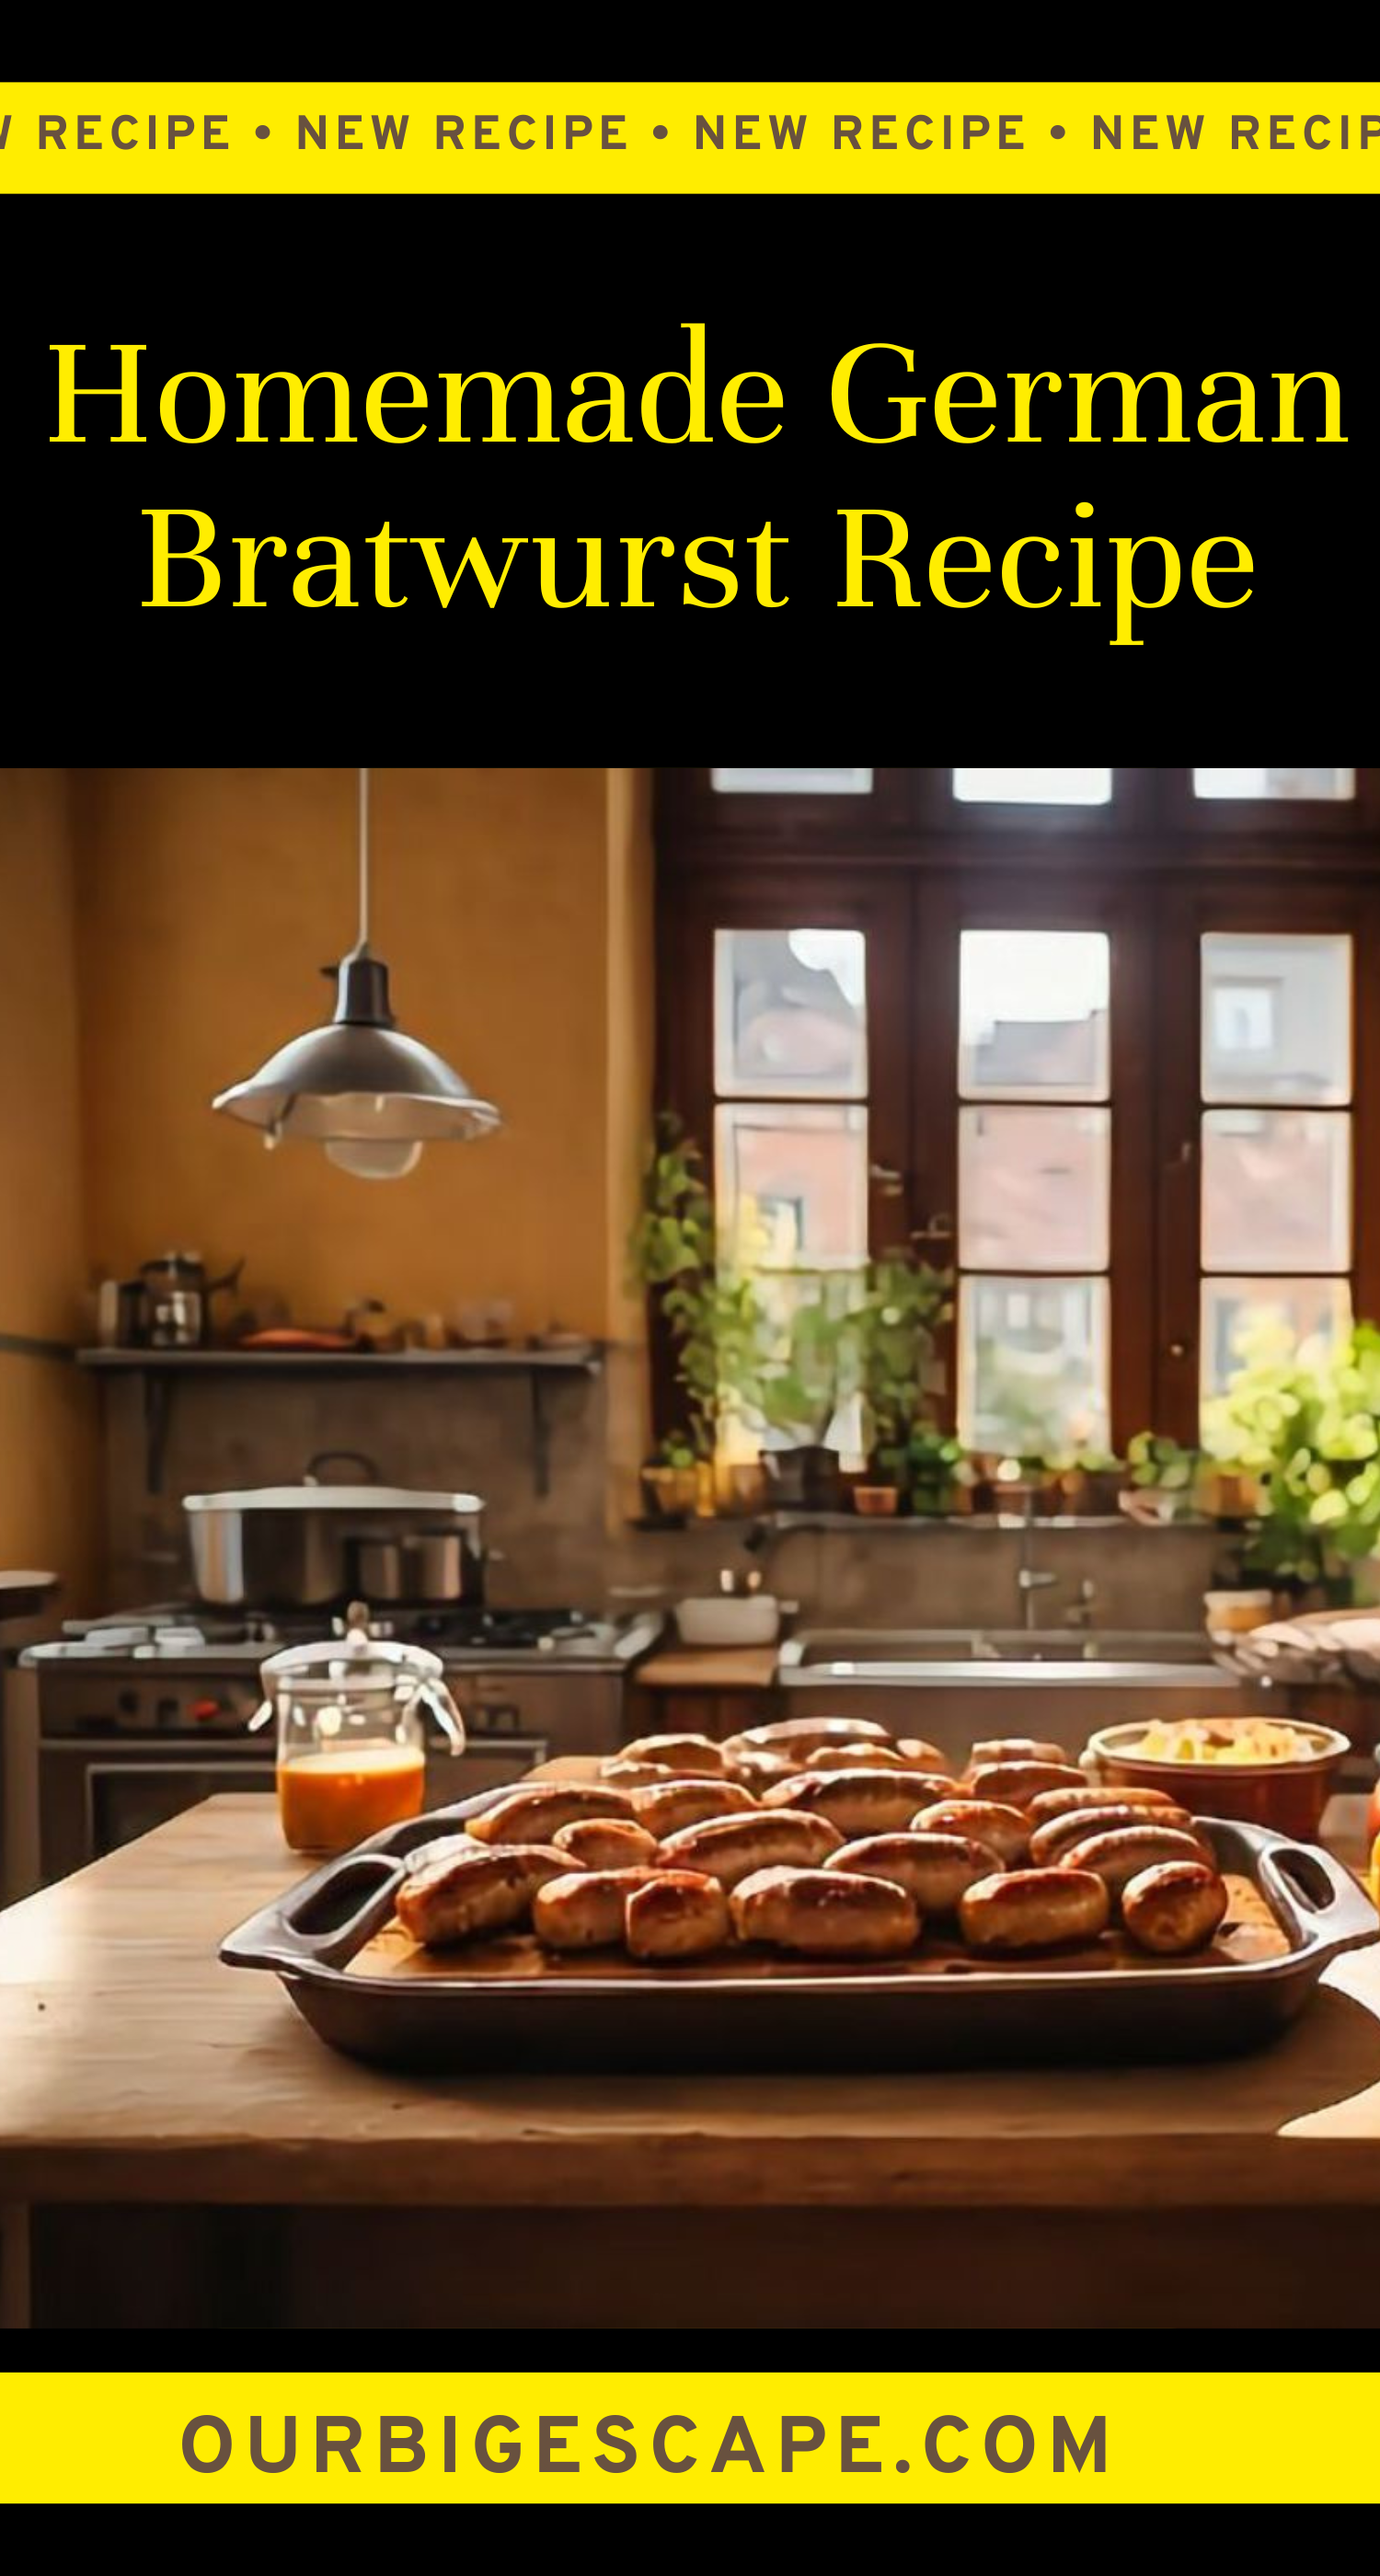 Homemade German Bratwurst Recipe